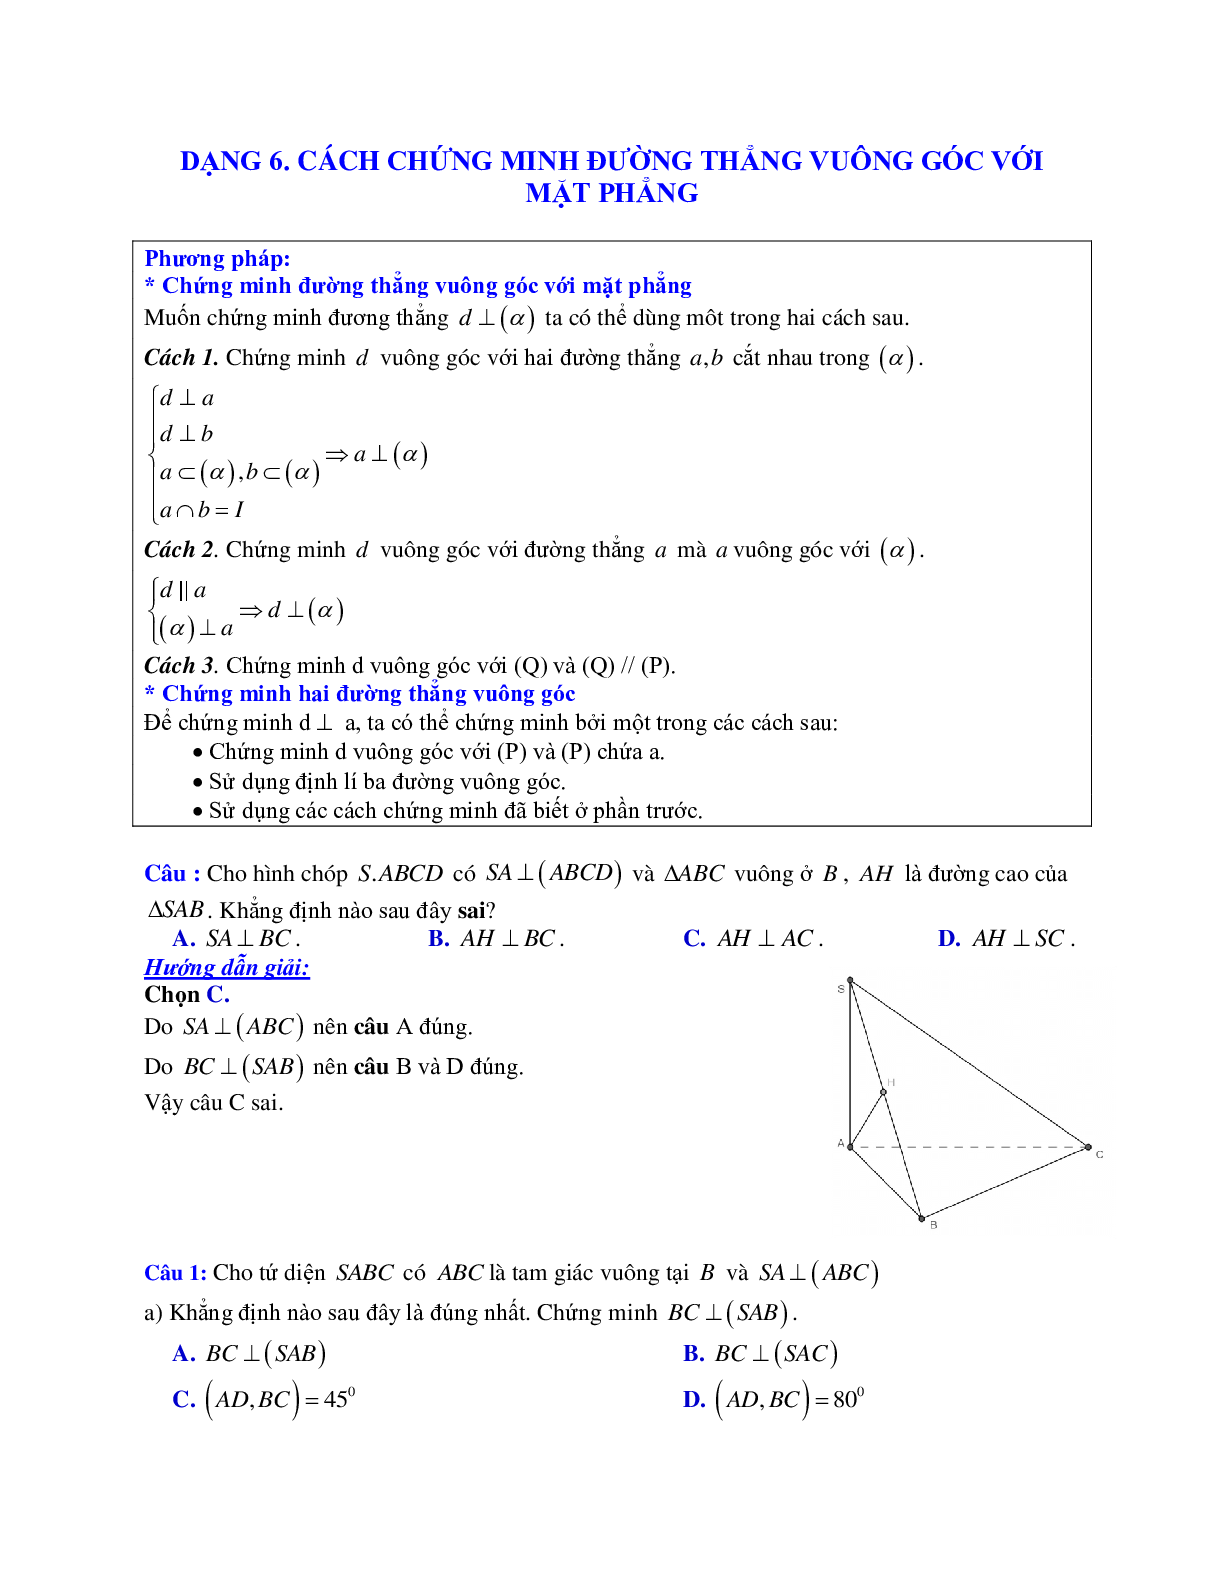 Phương pháp giải và bài tập về Cách chứng minh đường thẳng vuông góc với mặt phẳng (trang 1)